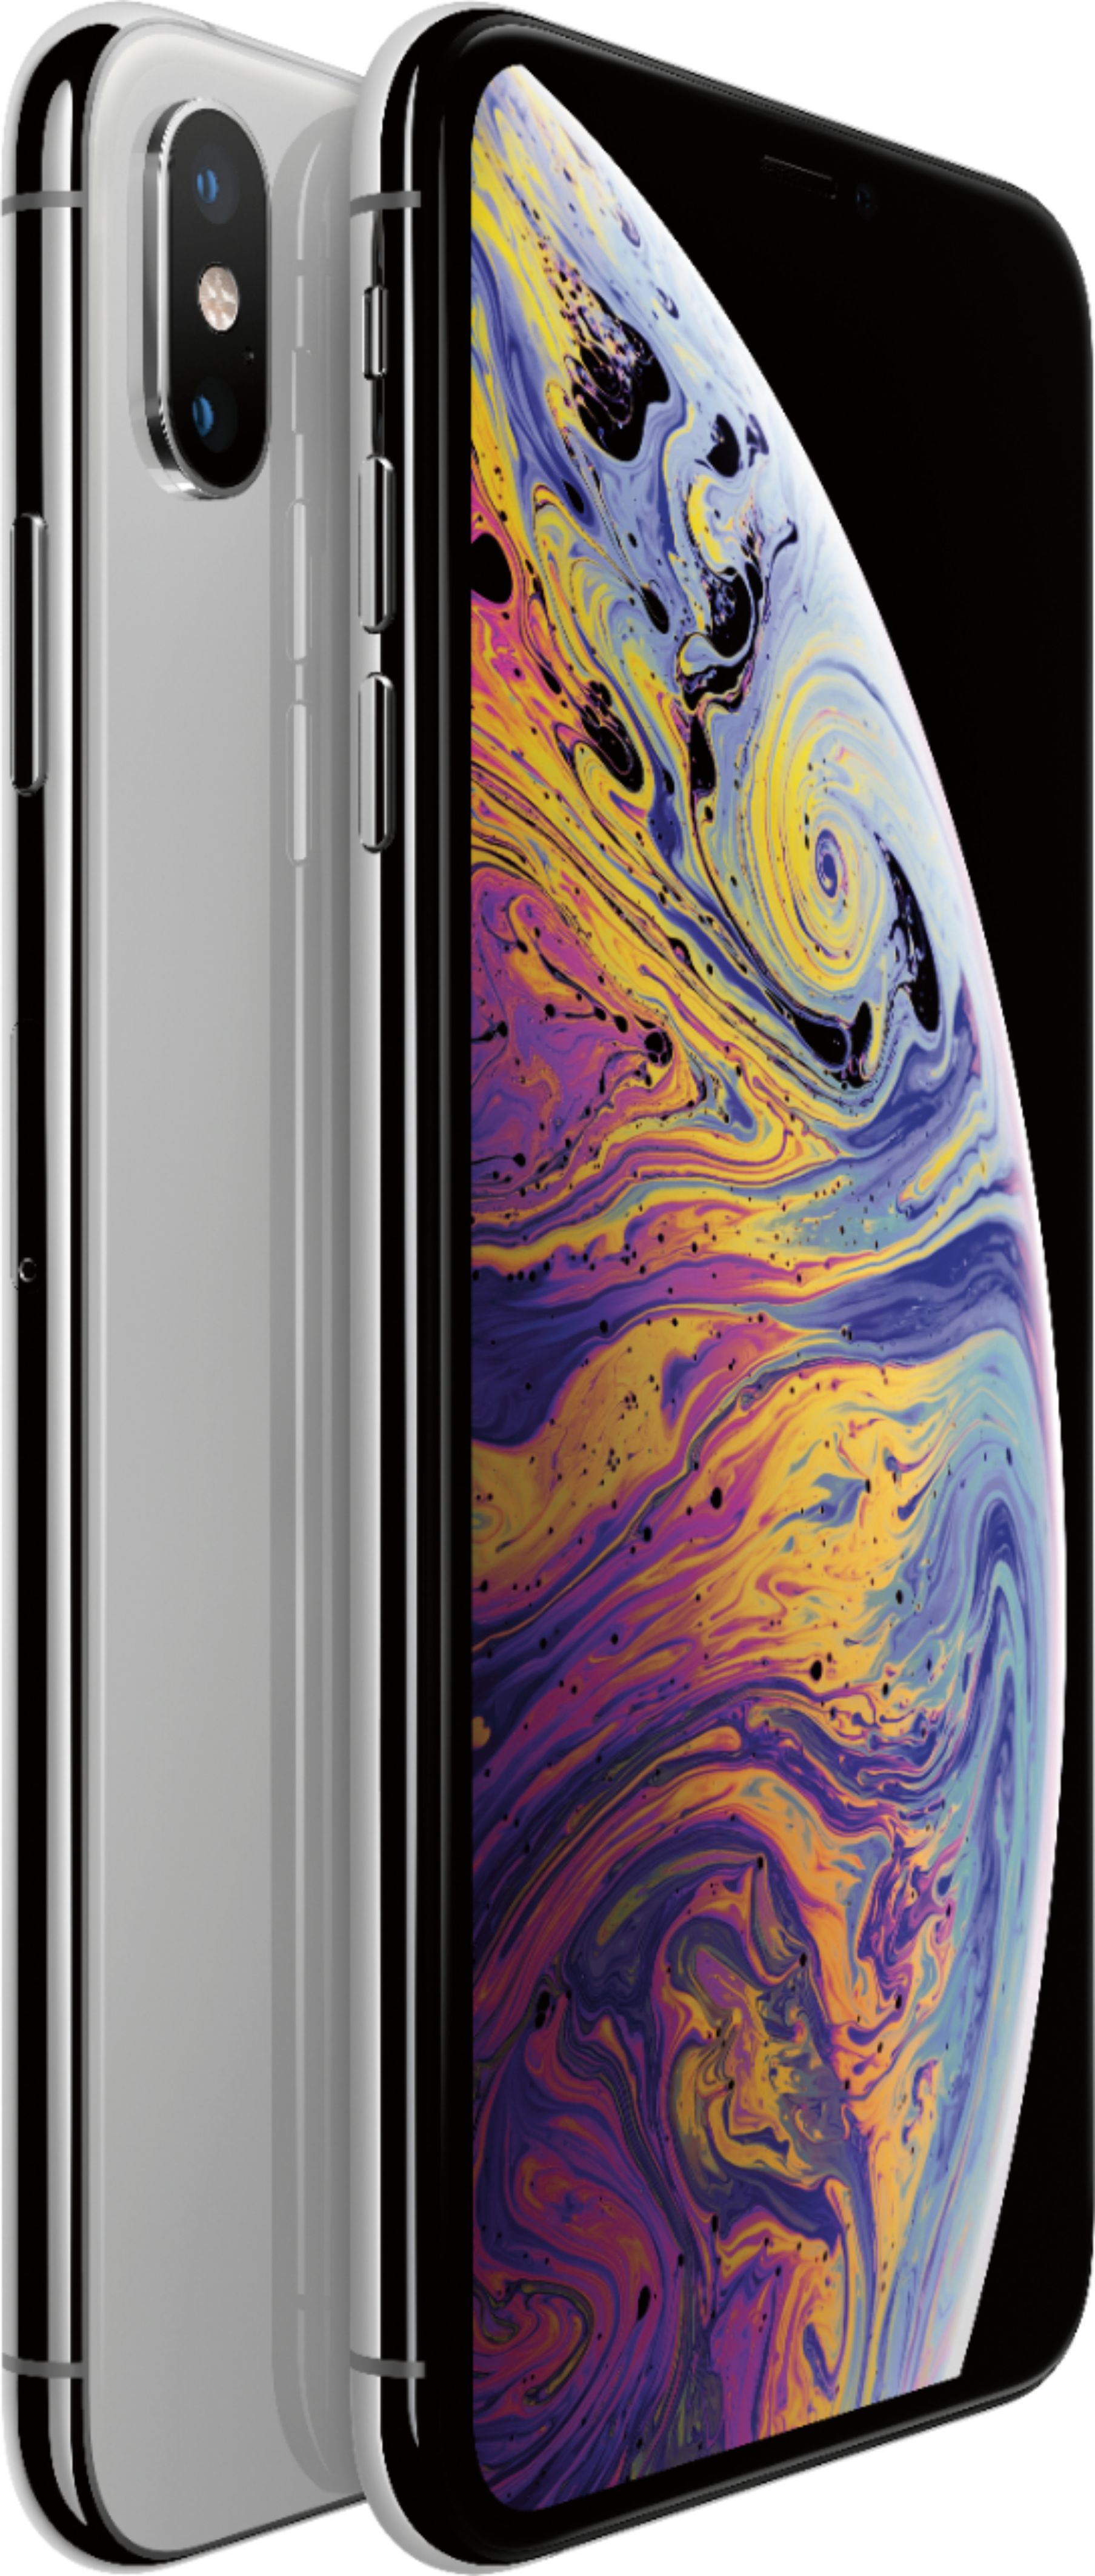 スマートフォン/携帯電話 スマートフォン本体 Best Buy: Apple iPhone XS Max 256GB Silver (AT&T) MT5E2LL/A